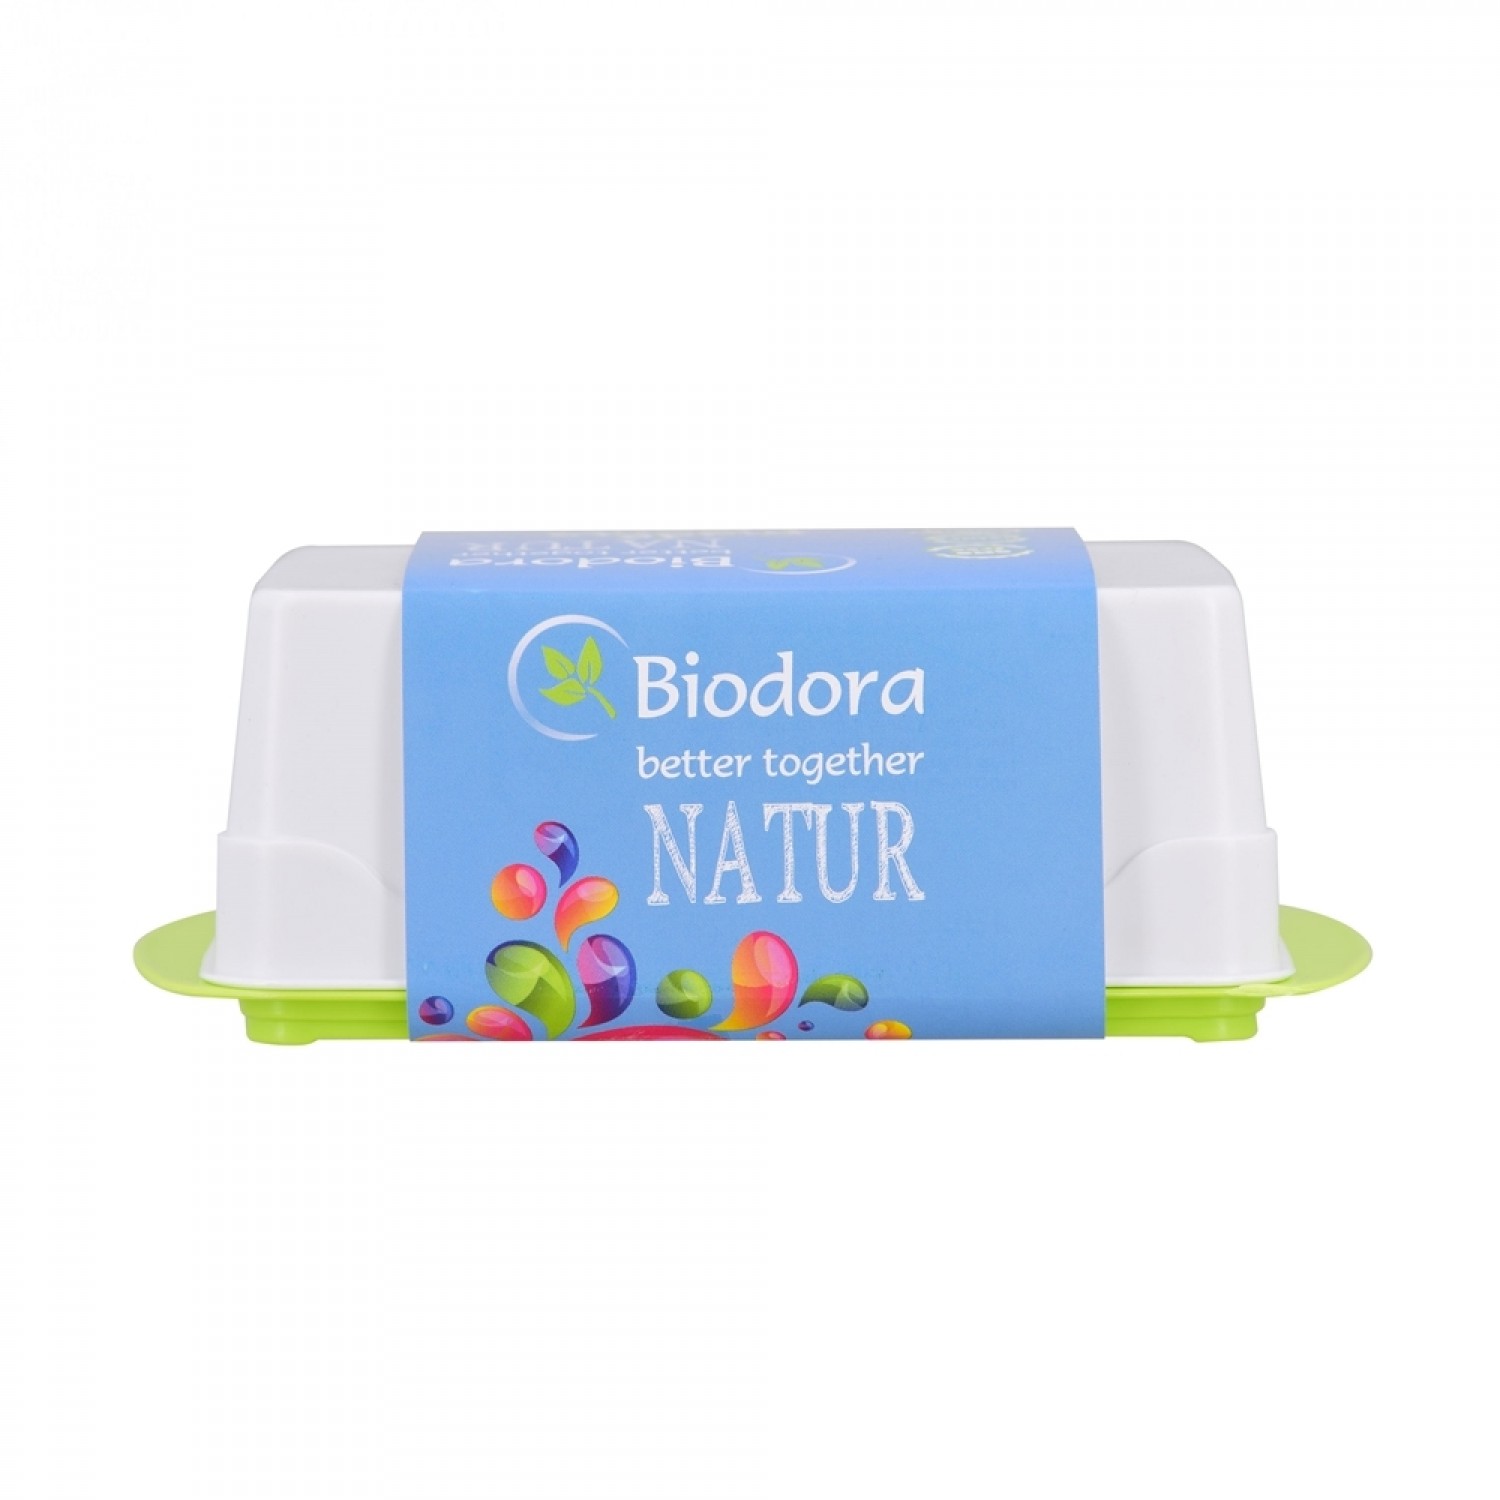 Biokunststoff Butterdose Grün/Weiß » Biodora